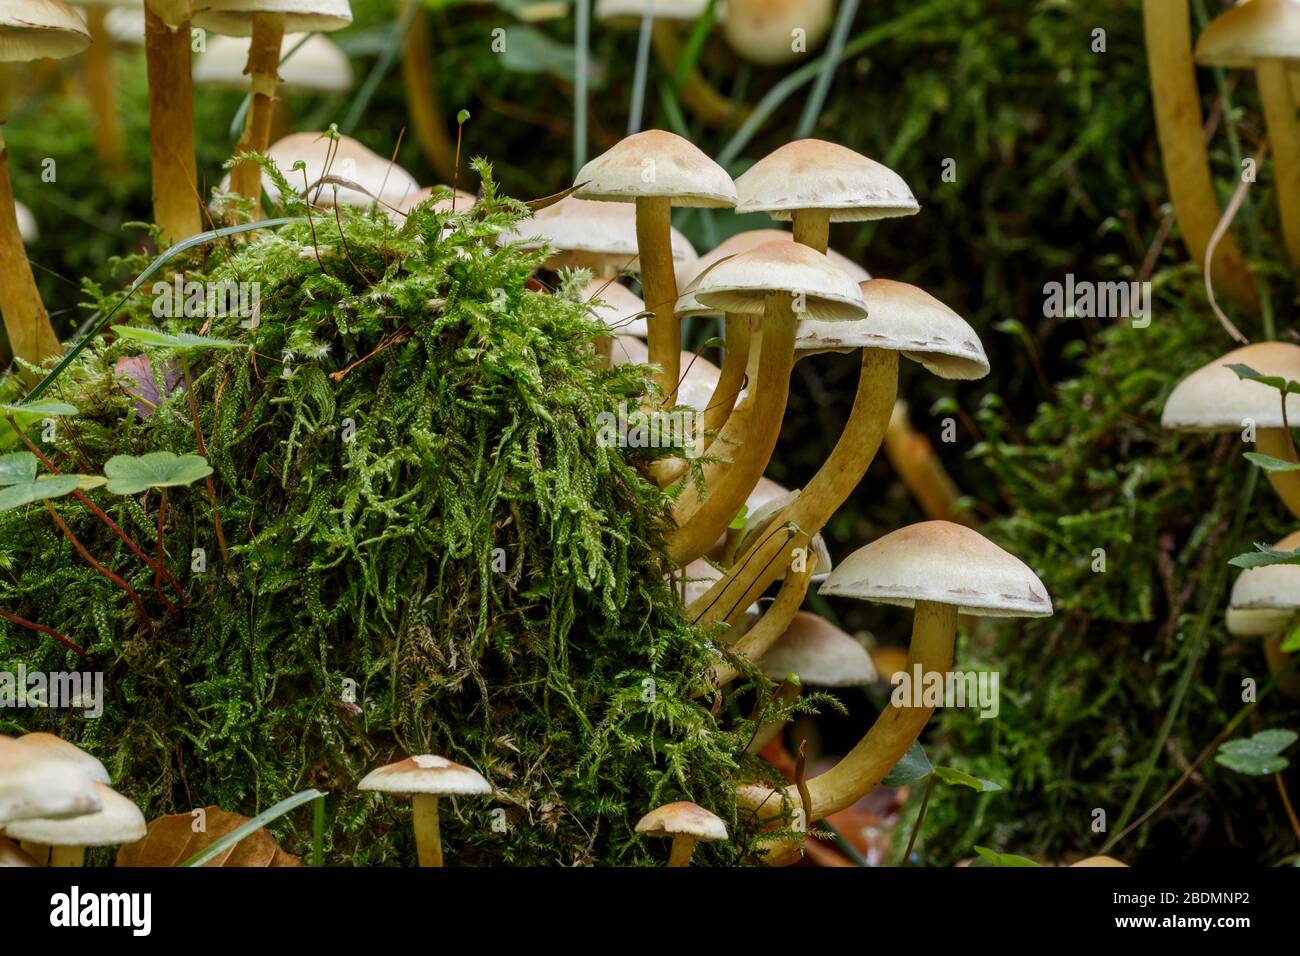 Pilze im Wald an morschem Baumstamm Stock Photo